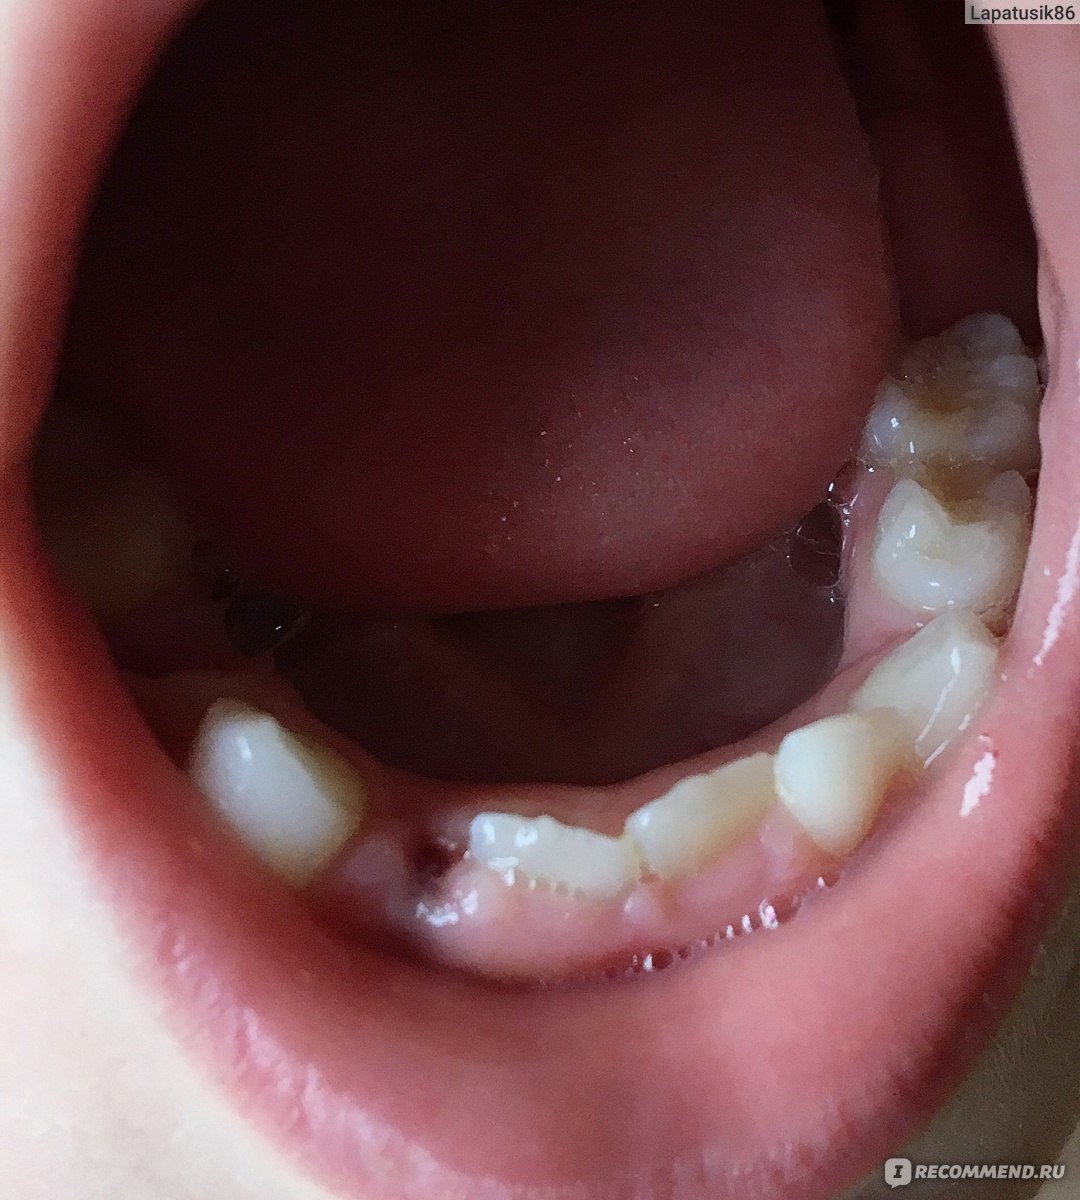 Анестезия при удалении зубов с помощью скандонеста